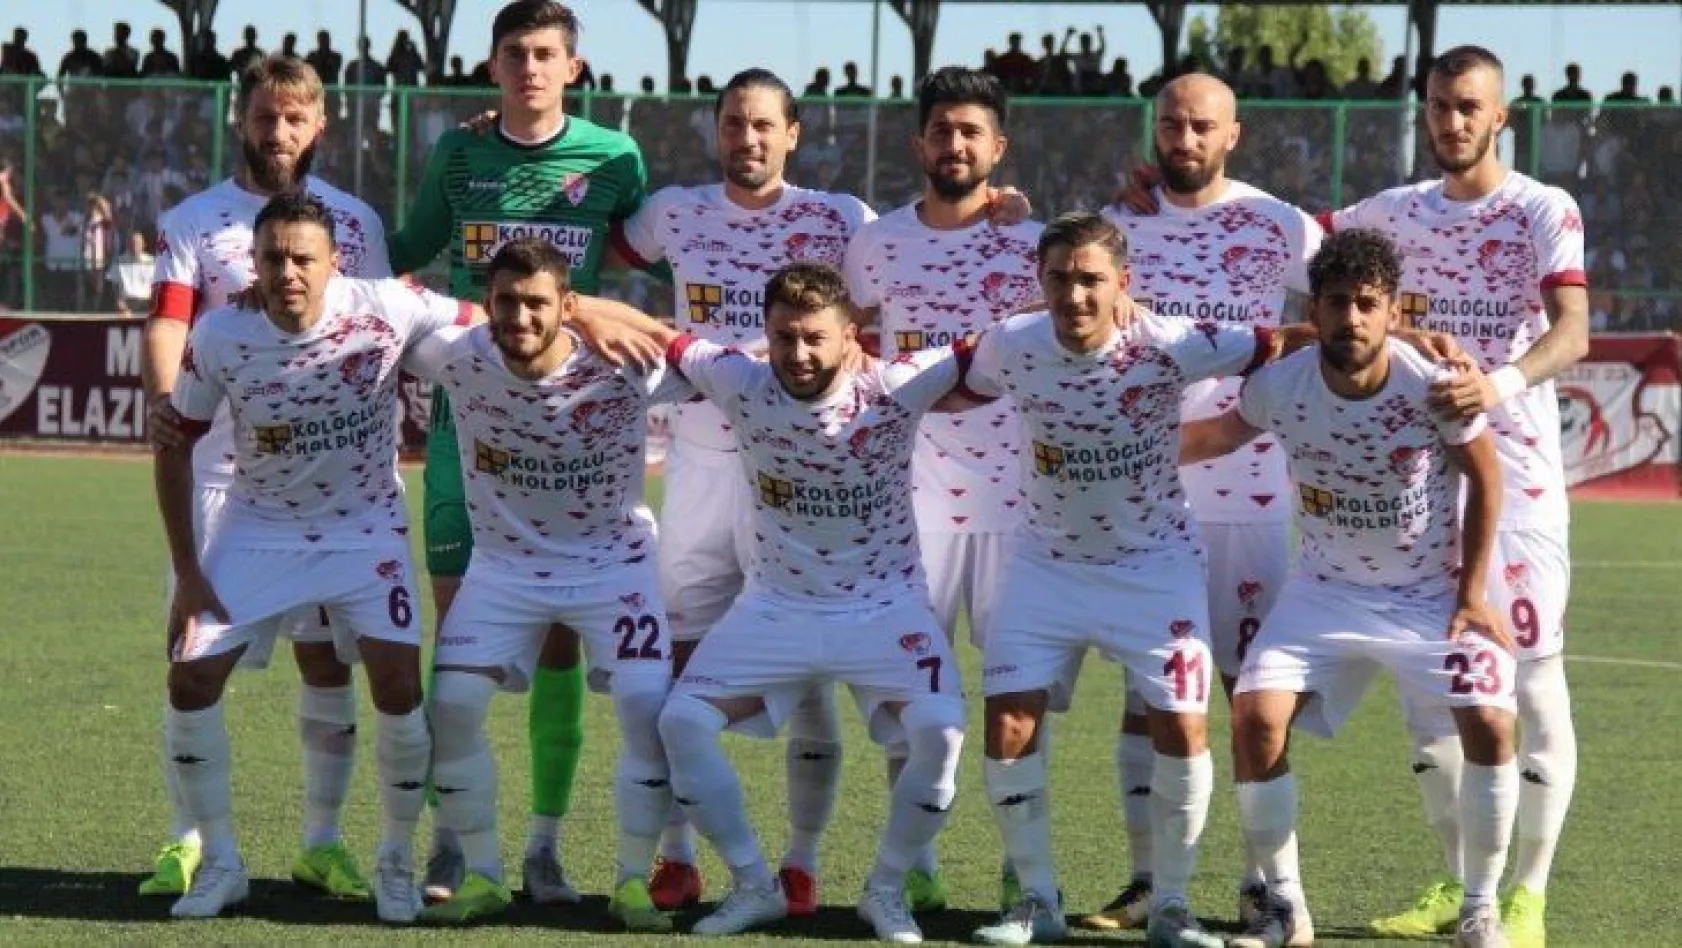 Elazığspor'a alt yapıdan gelen genç oyuncular katkı sağlıyor